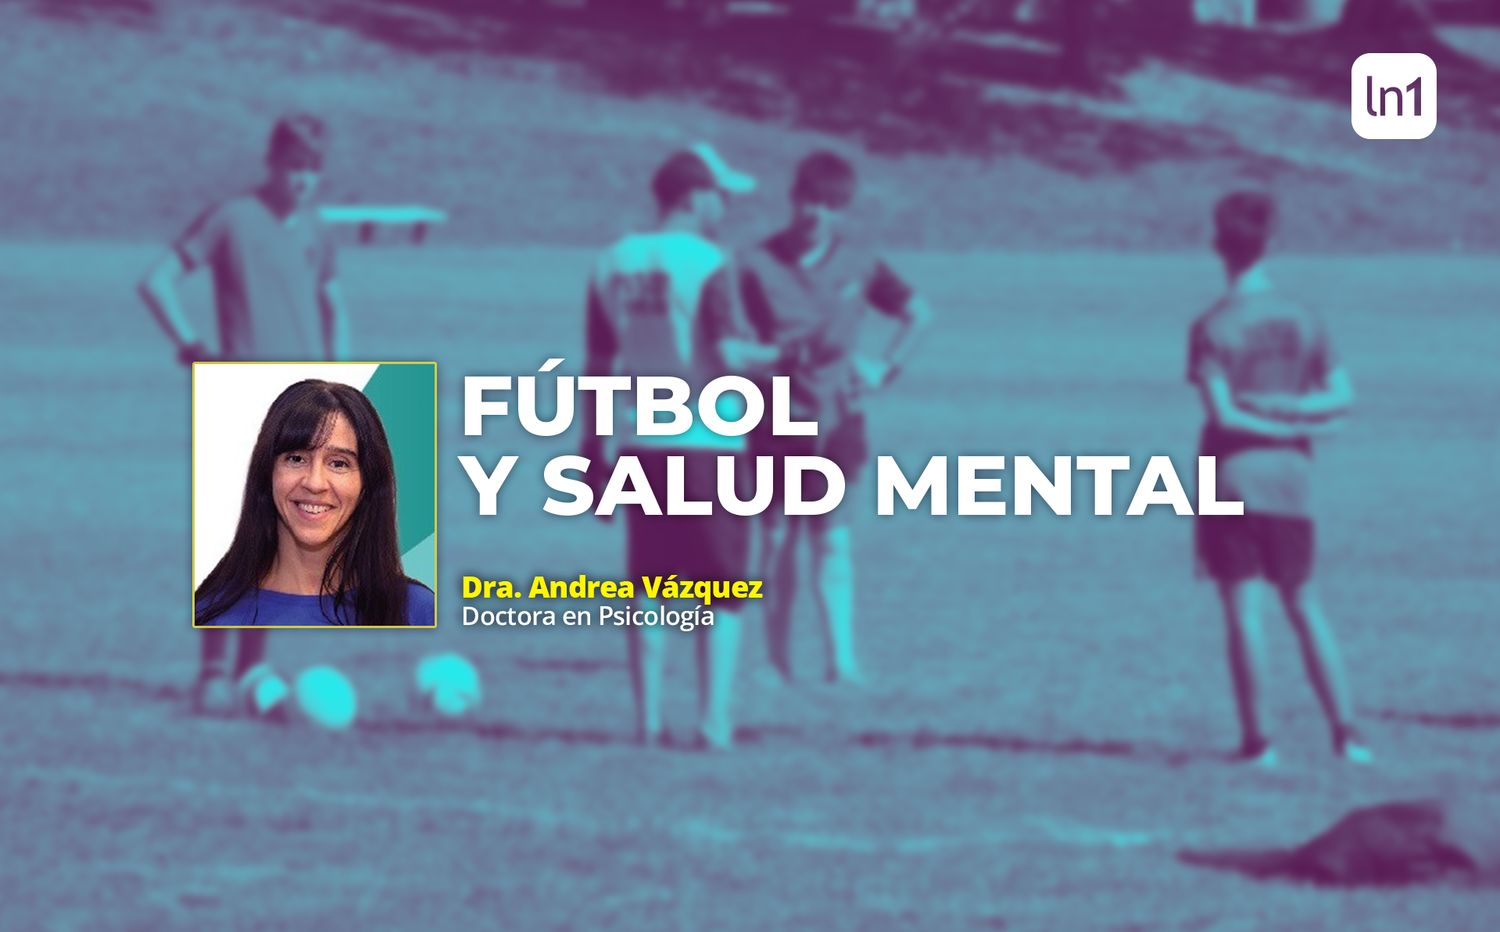 Fútbol y salud mental: ¿Qué pasa por la cabeza de un jugador que analiza tomar una drástica decisión?